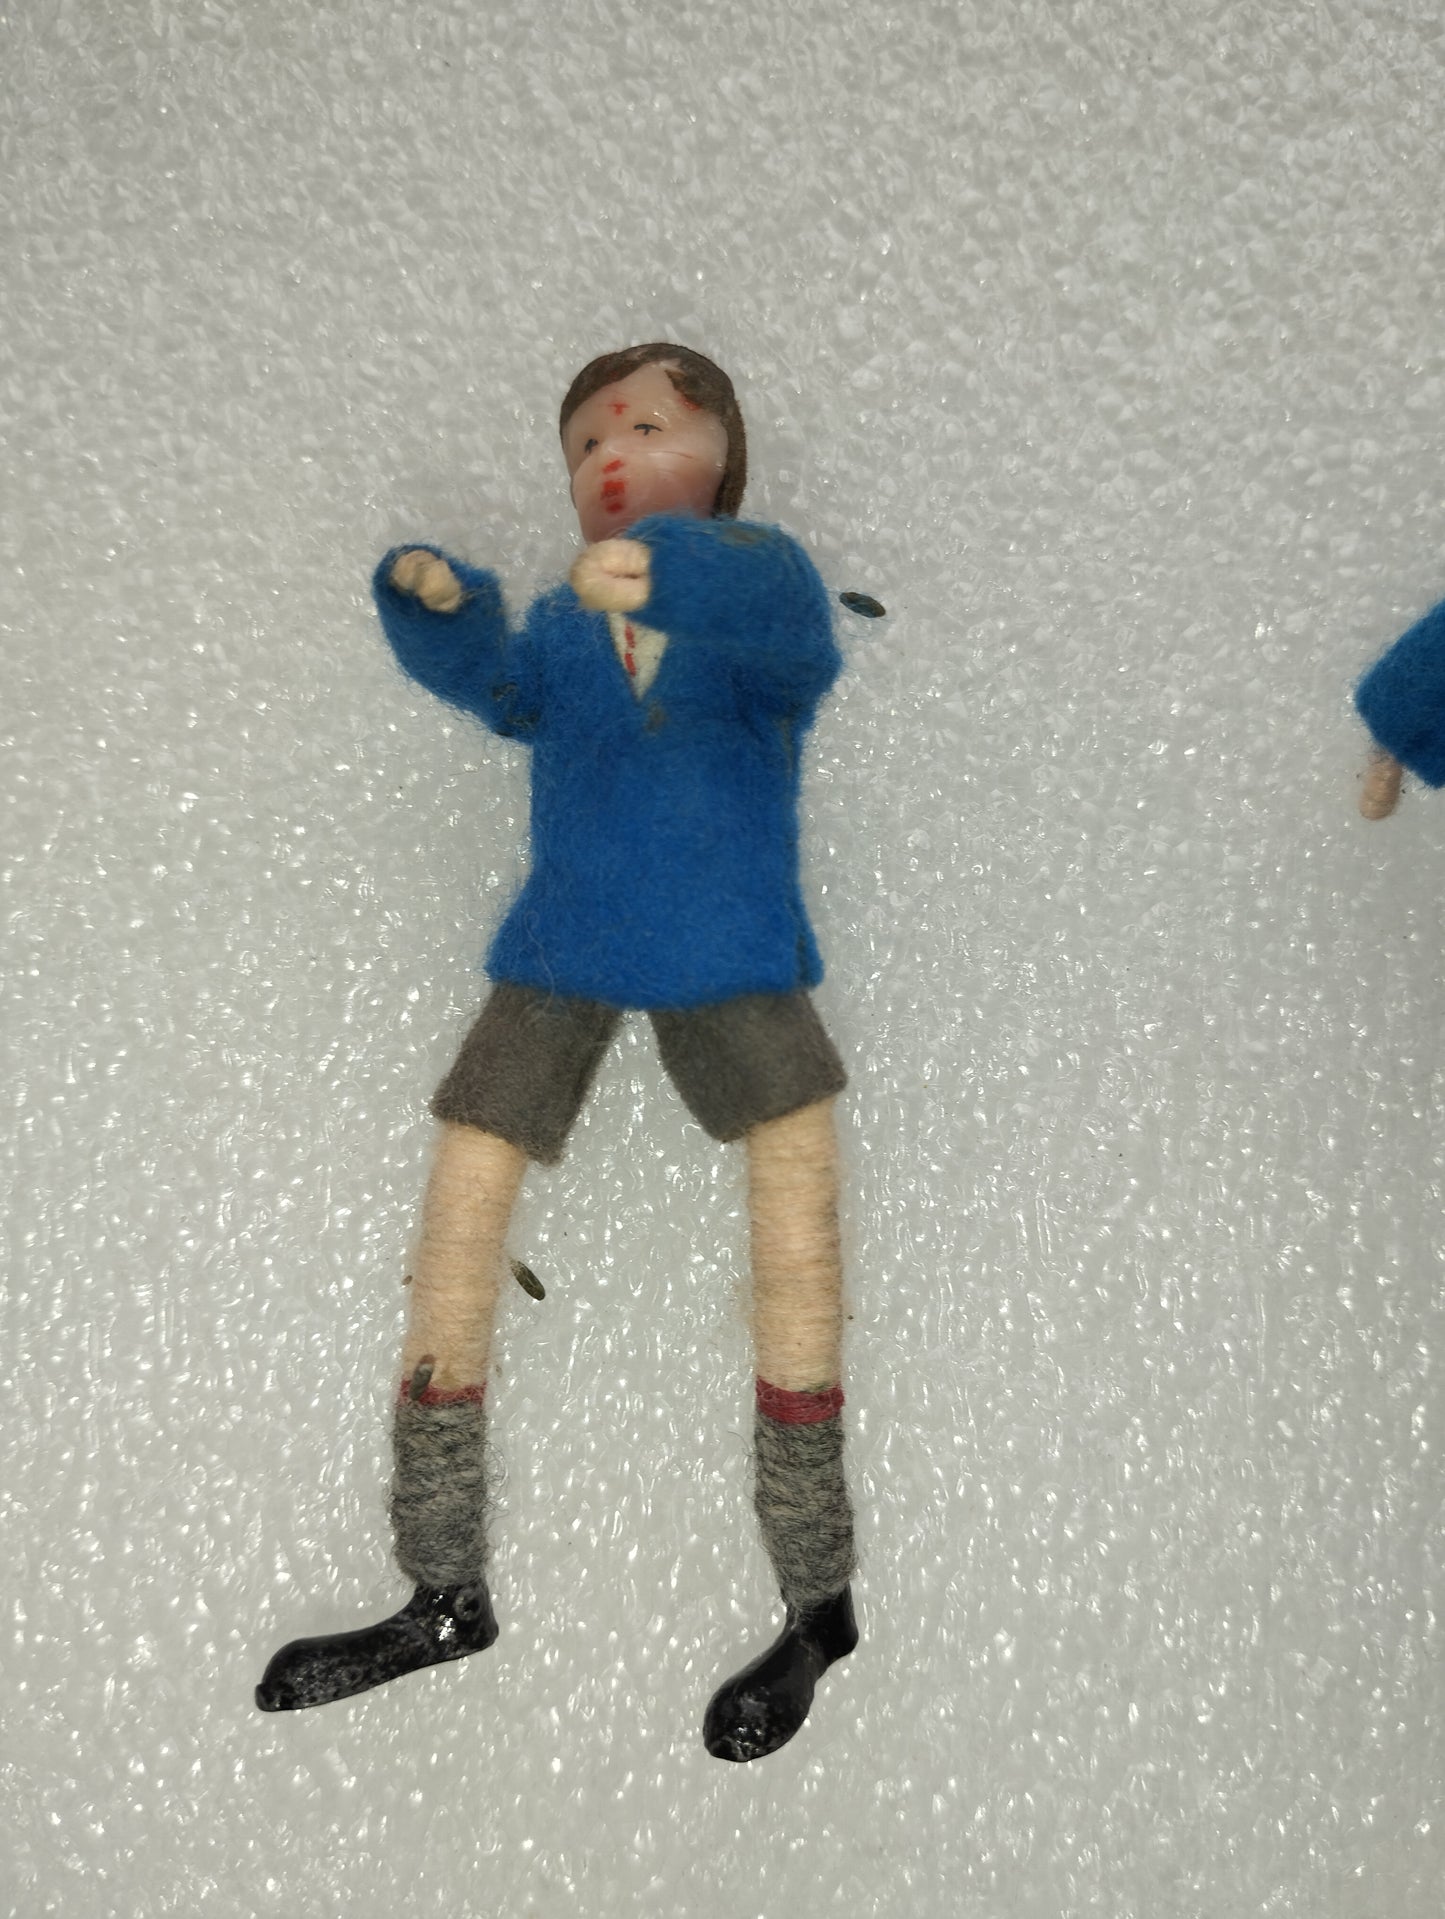 Bambole In Miniatura per Casa delle  Bambole in Metallo/Plastica/Tessuto

D'epoca